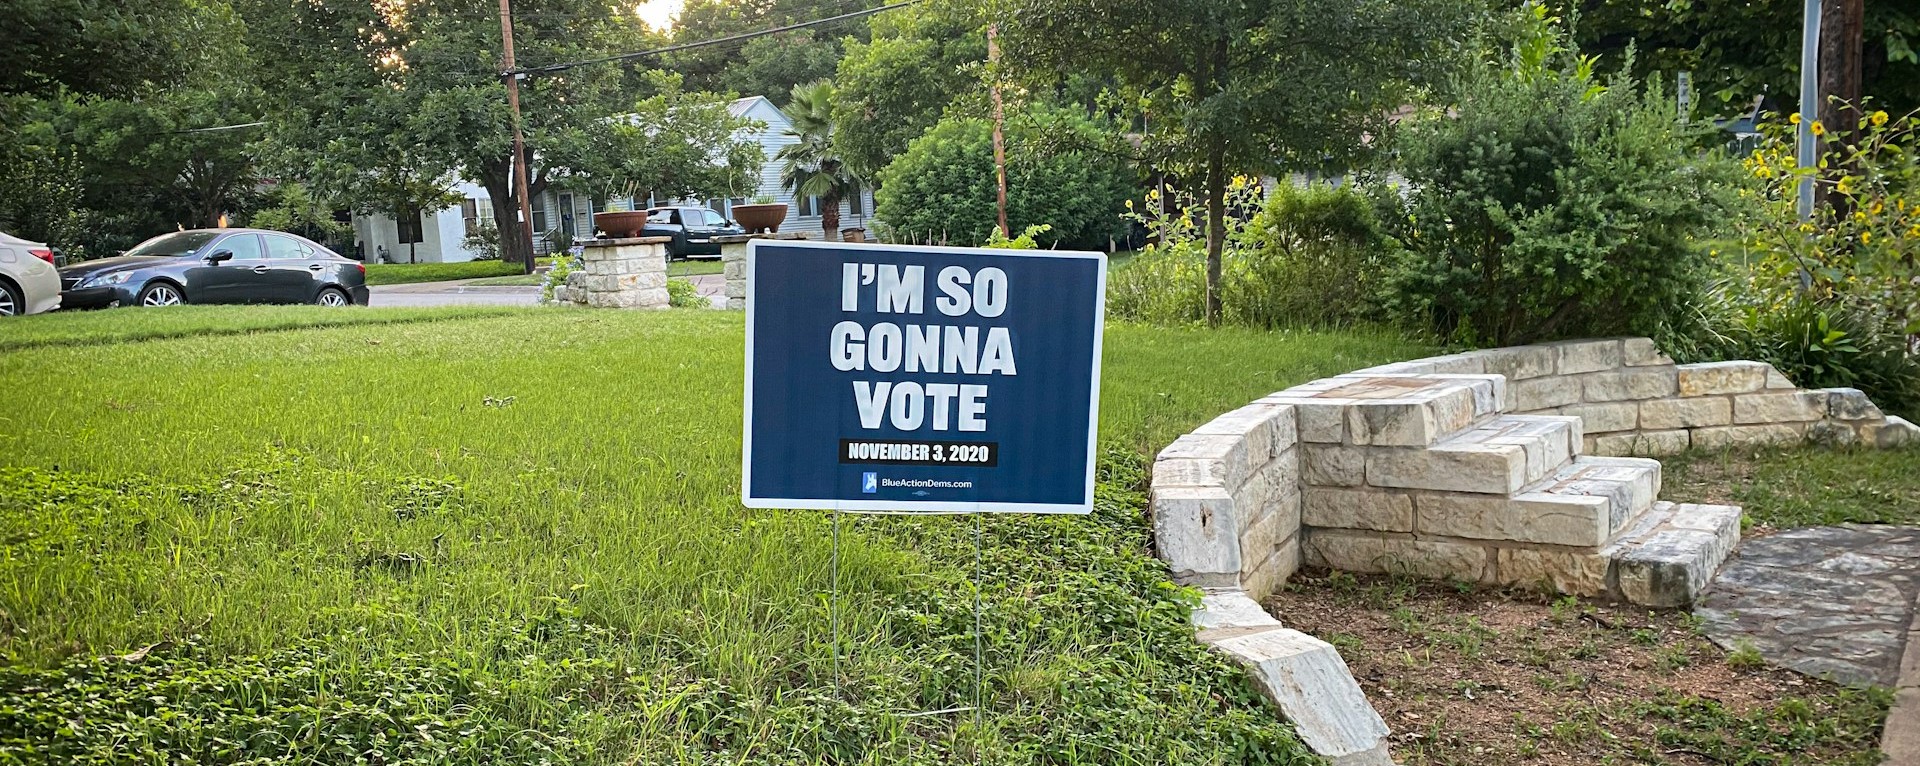 political yard sign on lawn